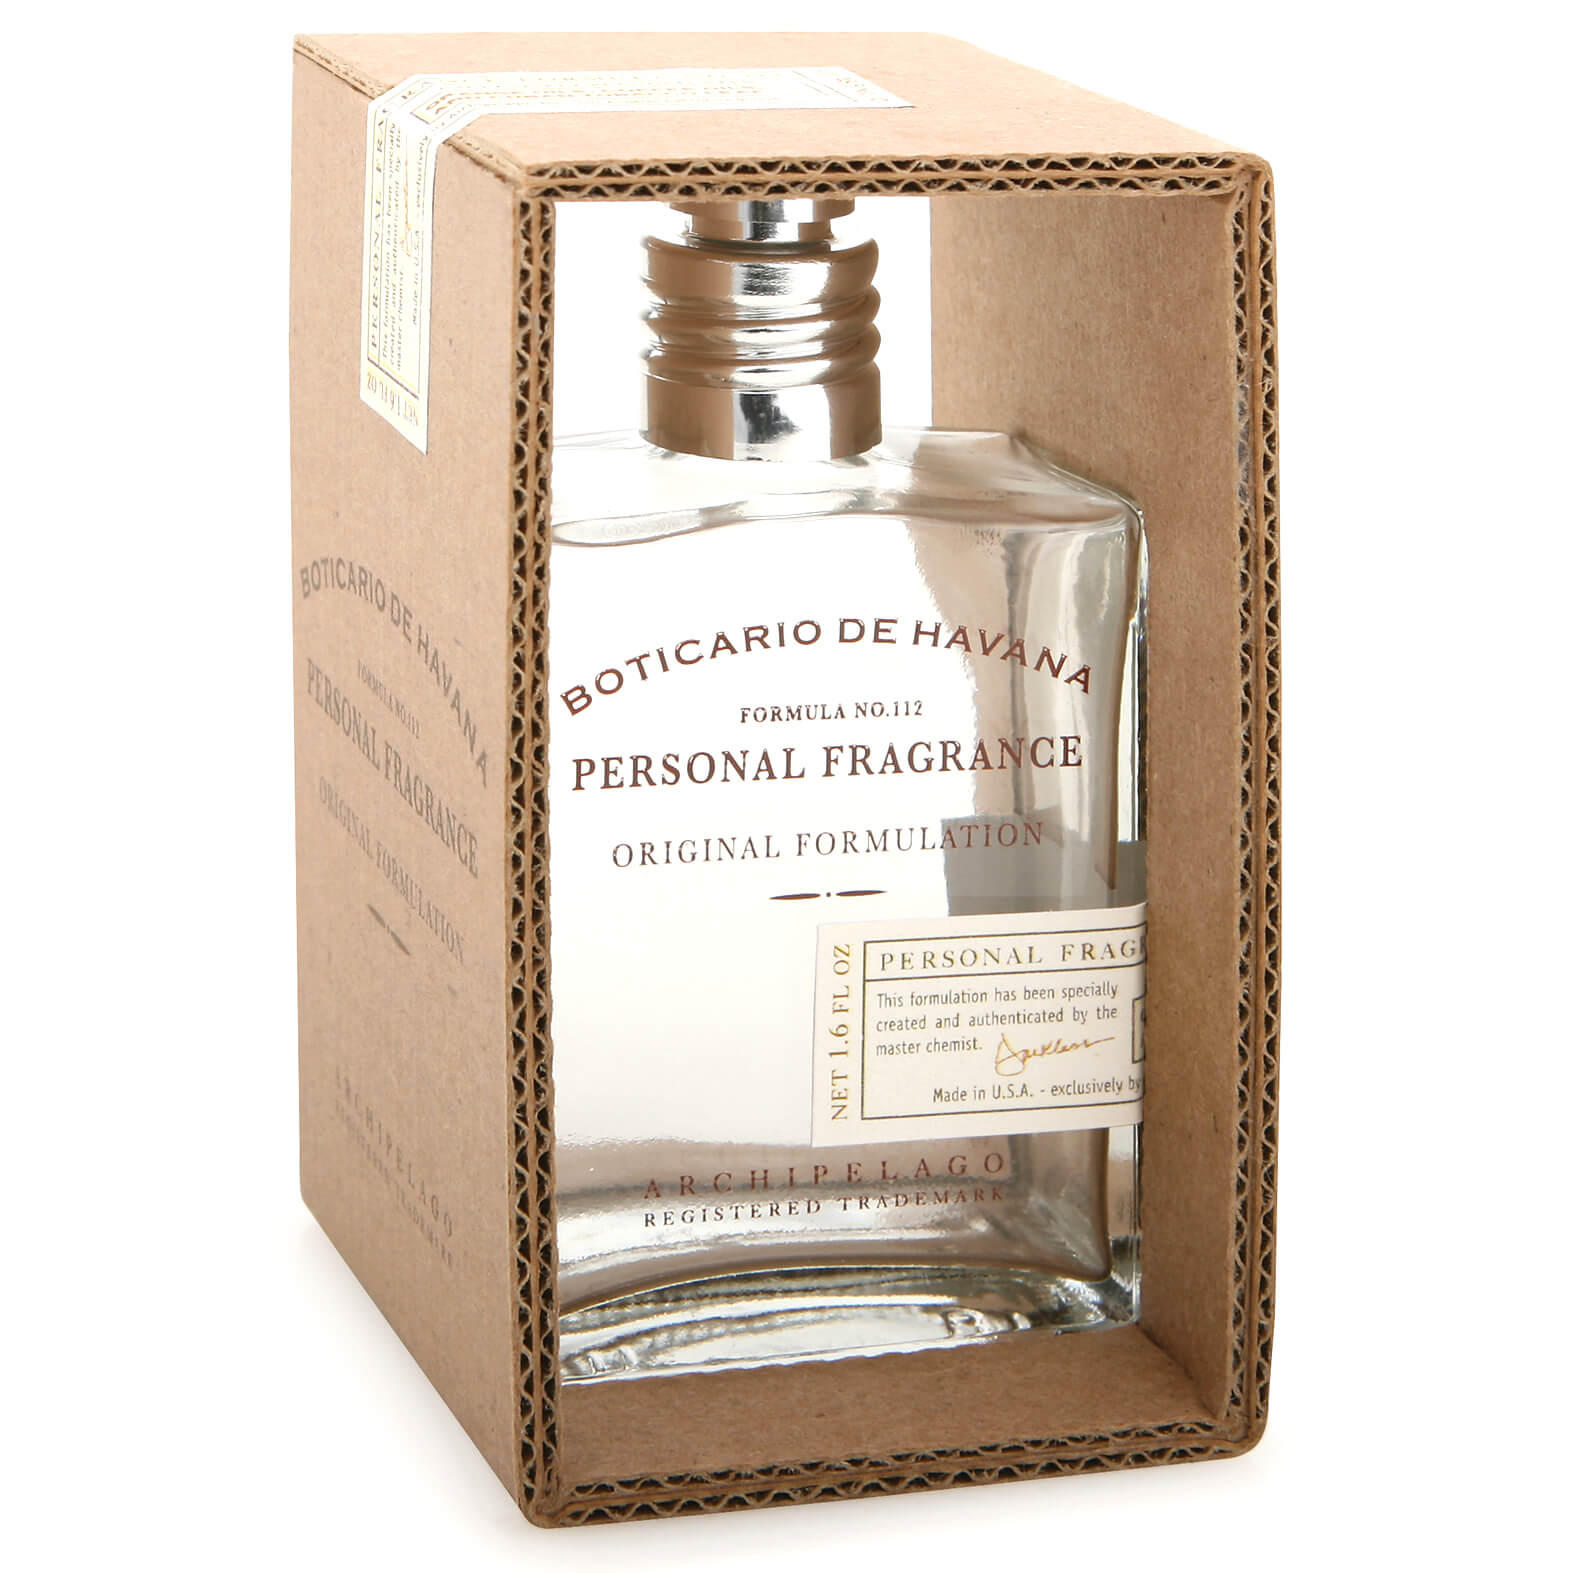 Perfume en espray Boticario de Havana de Archipelago Botanicals 50 ml